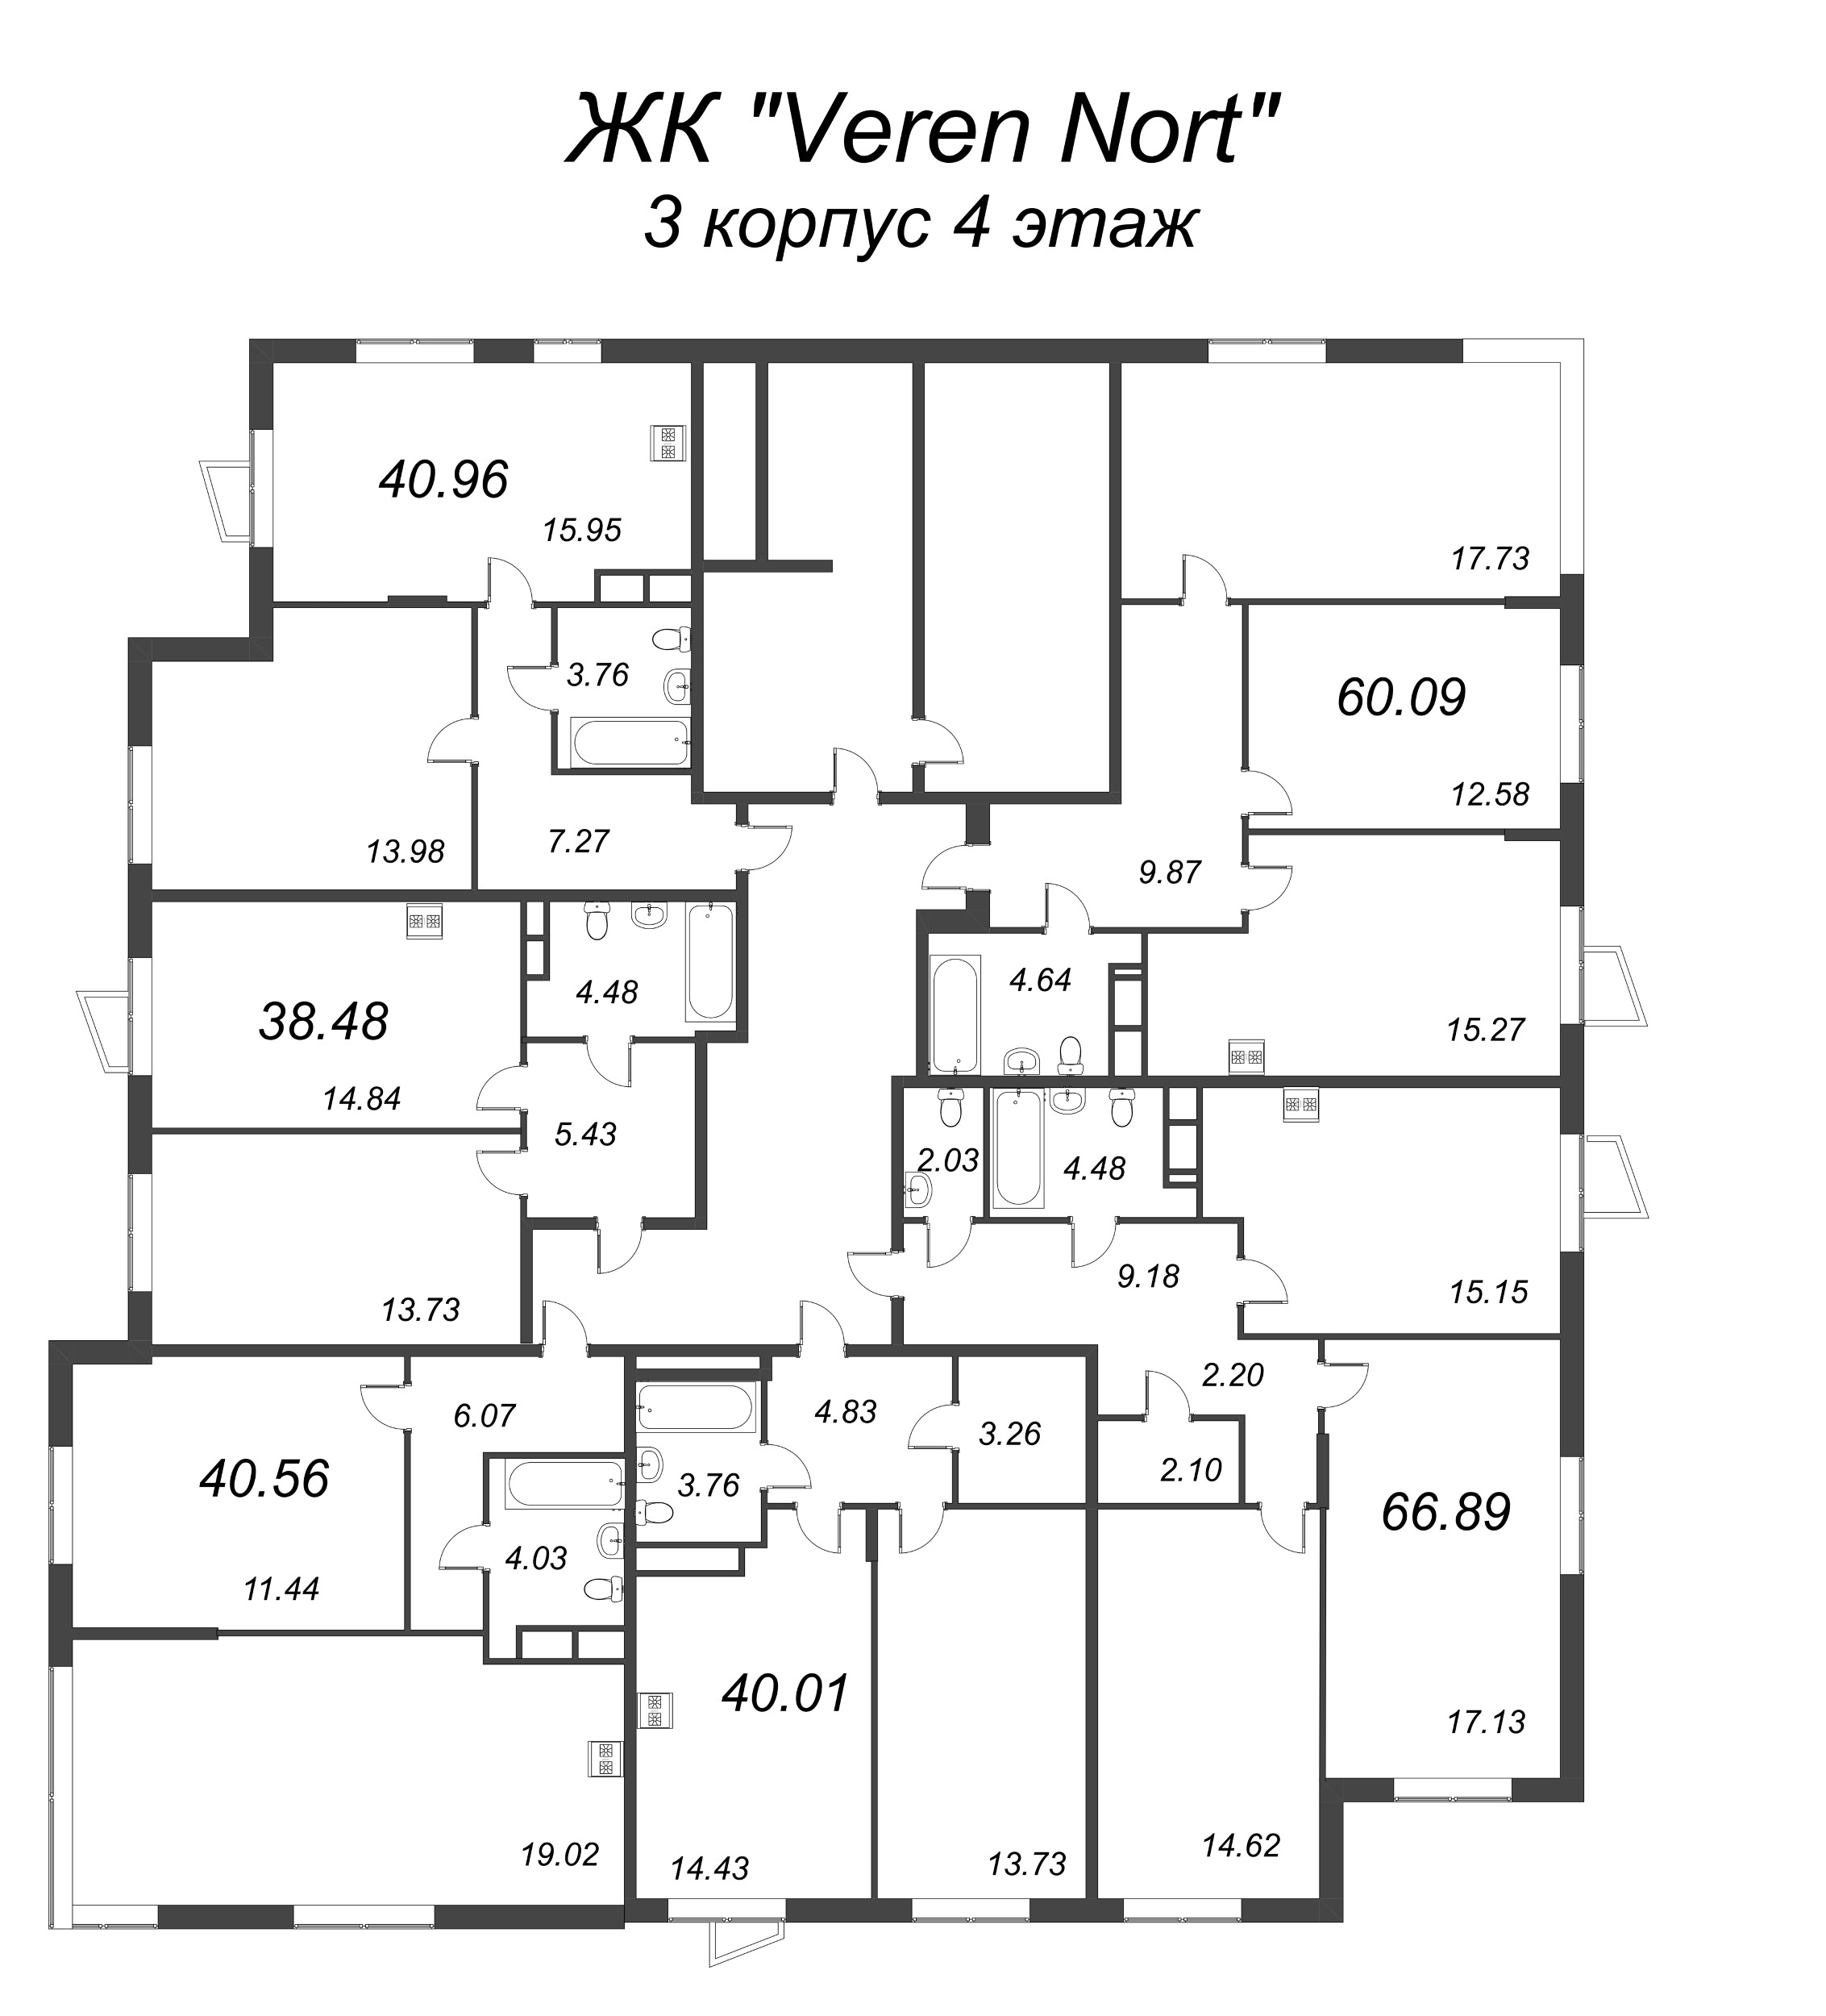 2-комнатная (Евро) квартира, 38.48 м² в ЖК "VEREN NORT сертолово" - планировка этажа